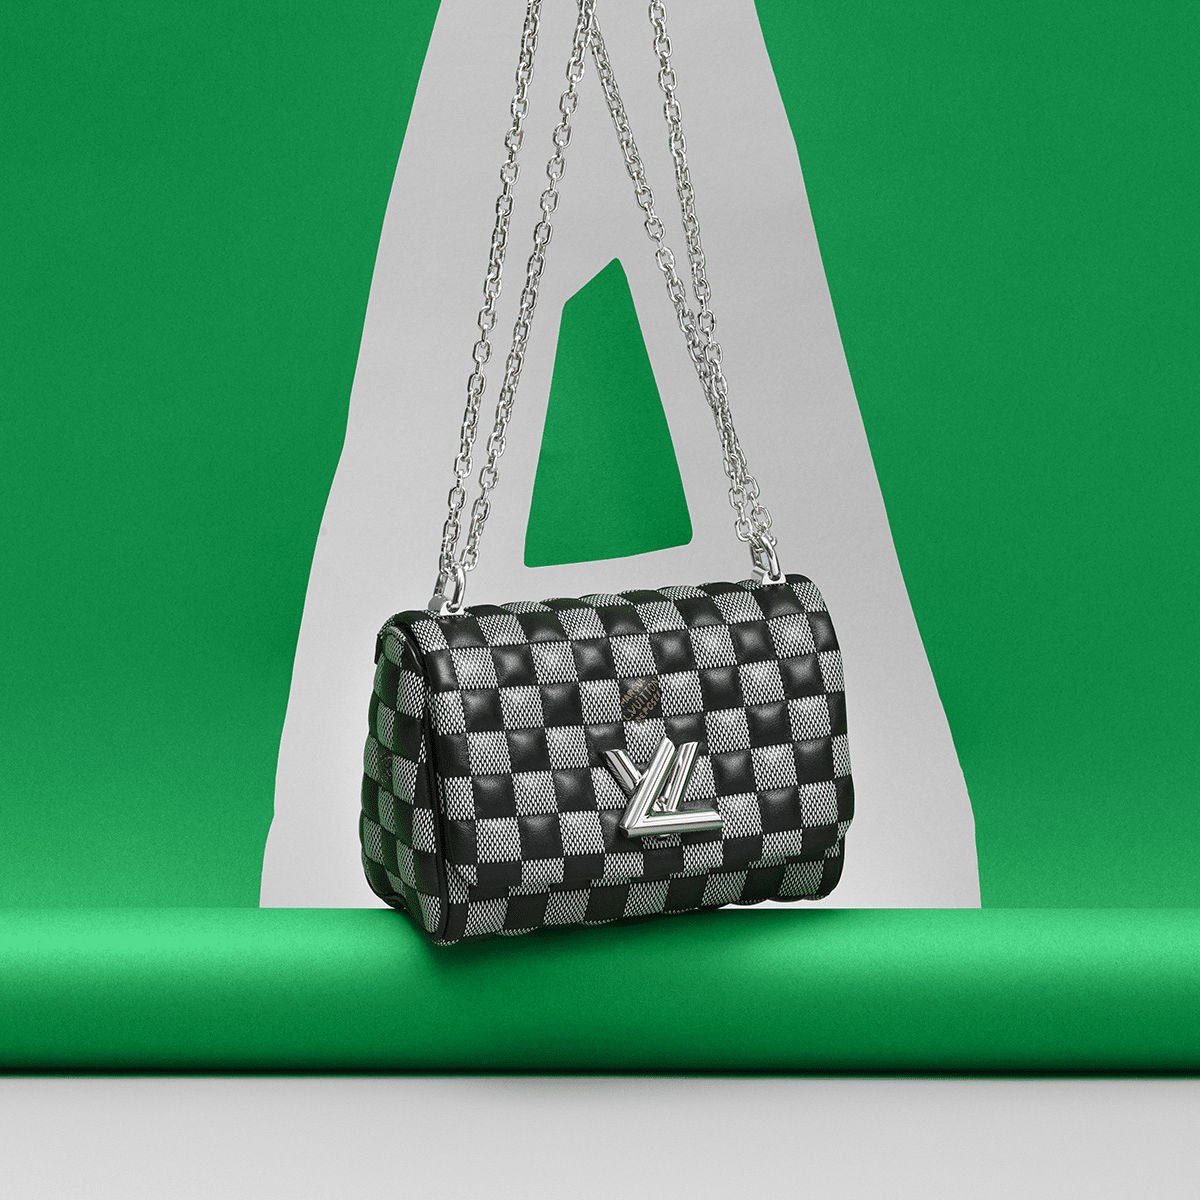 Louis Vuitton FW19 bag preview